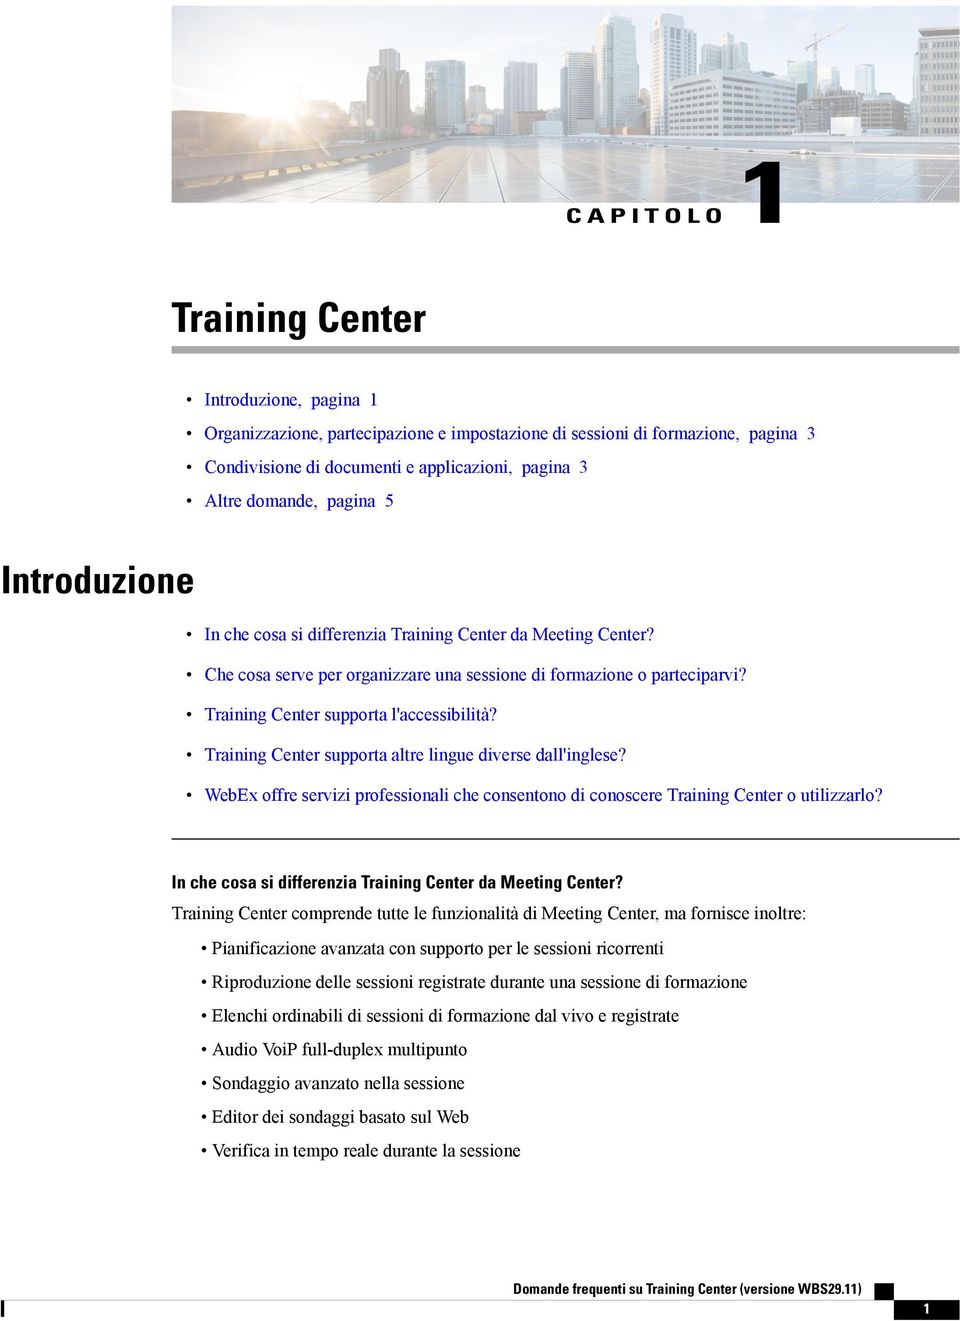 Training Center supporta altre lingue diverse dall'inglese? WebEx offre servizi professionali che consentono di conoscere Training Center o utilizzarlo?